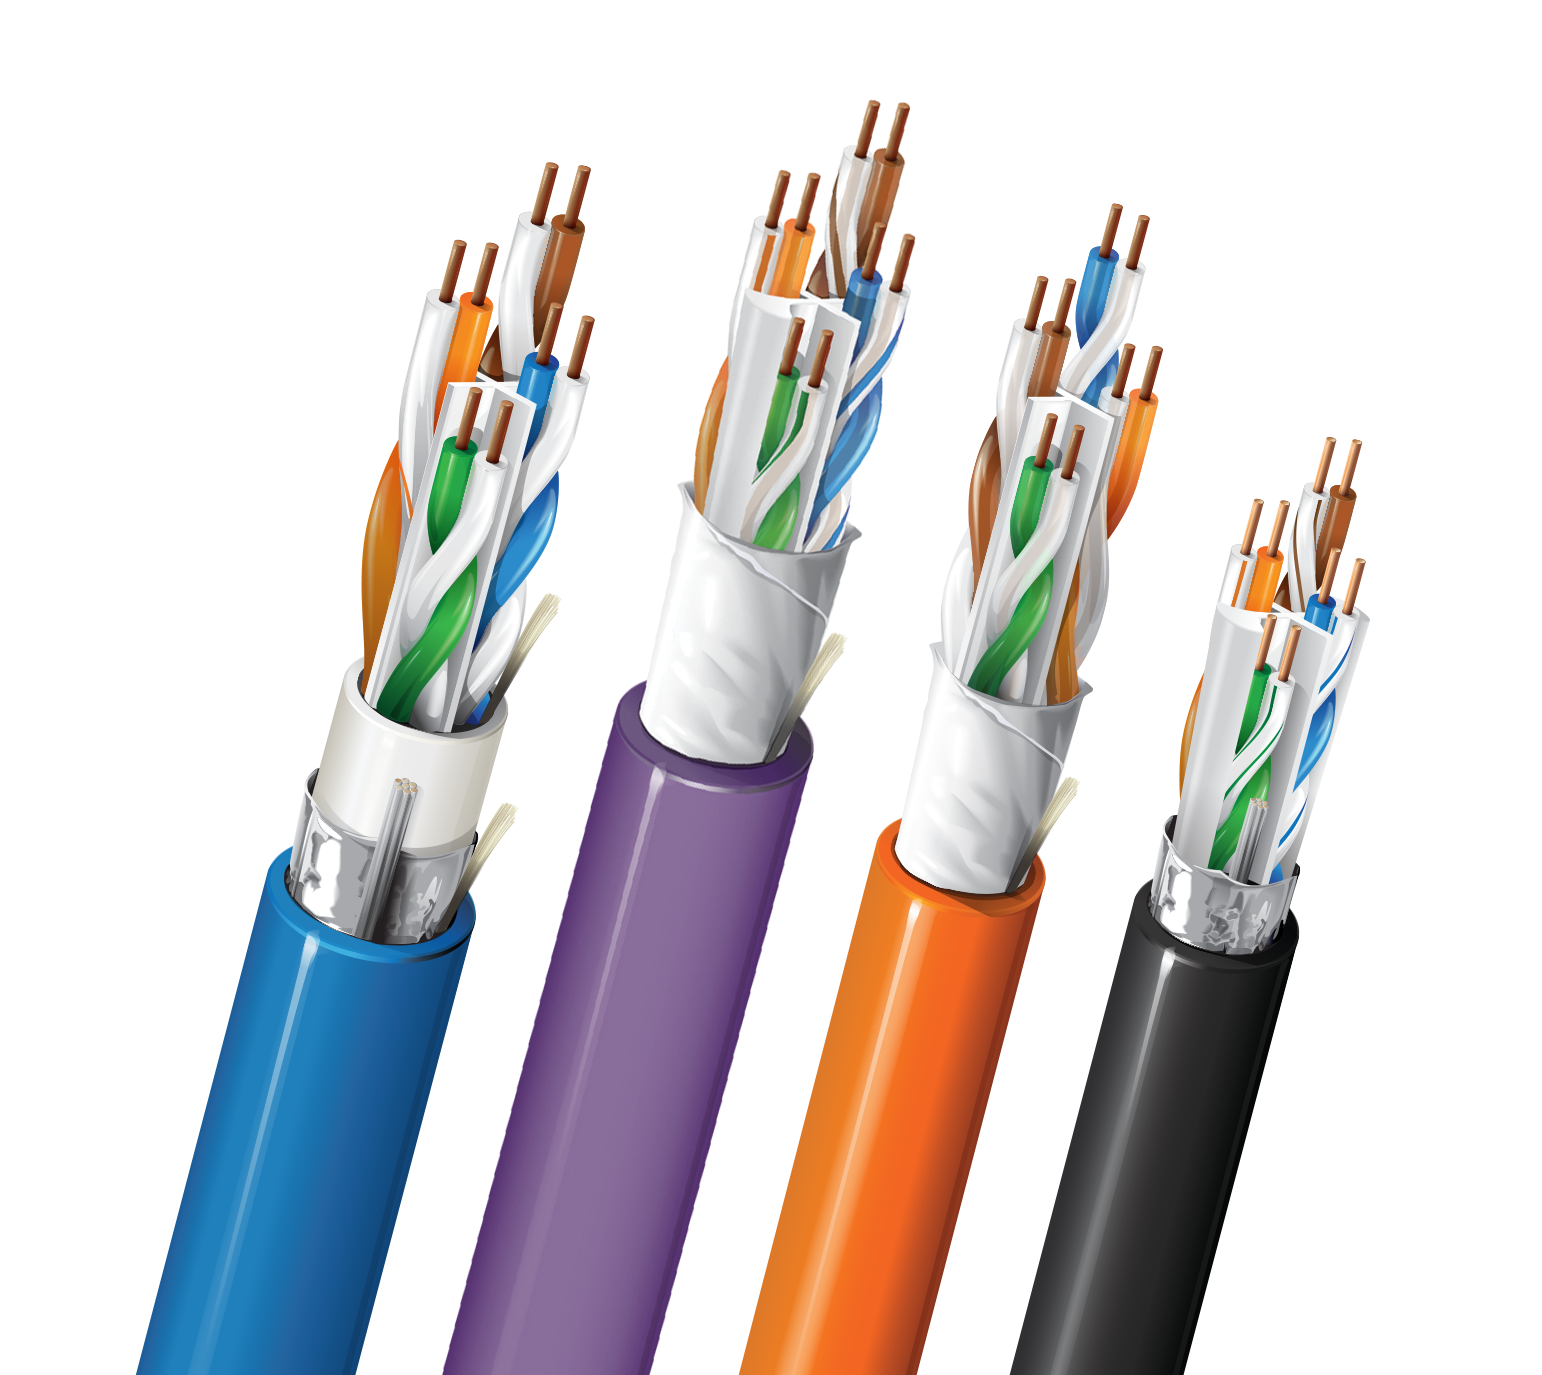 Belden Cat 6A Ethernet cable configurations